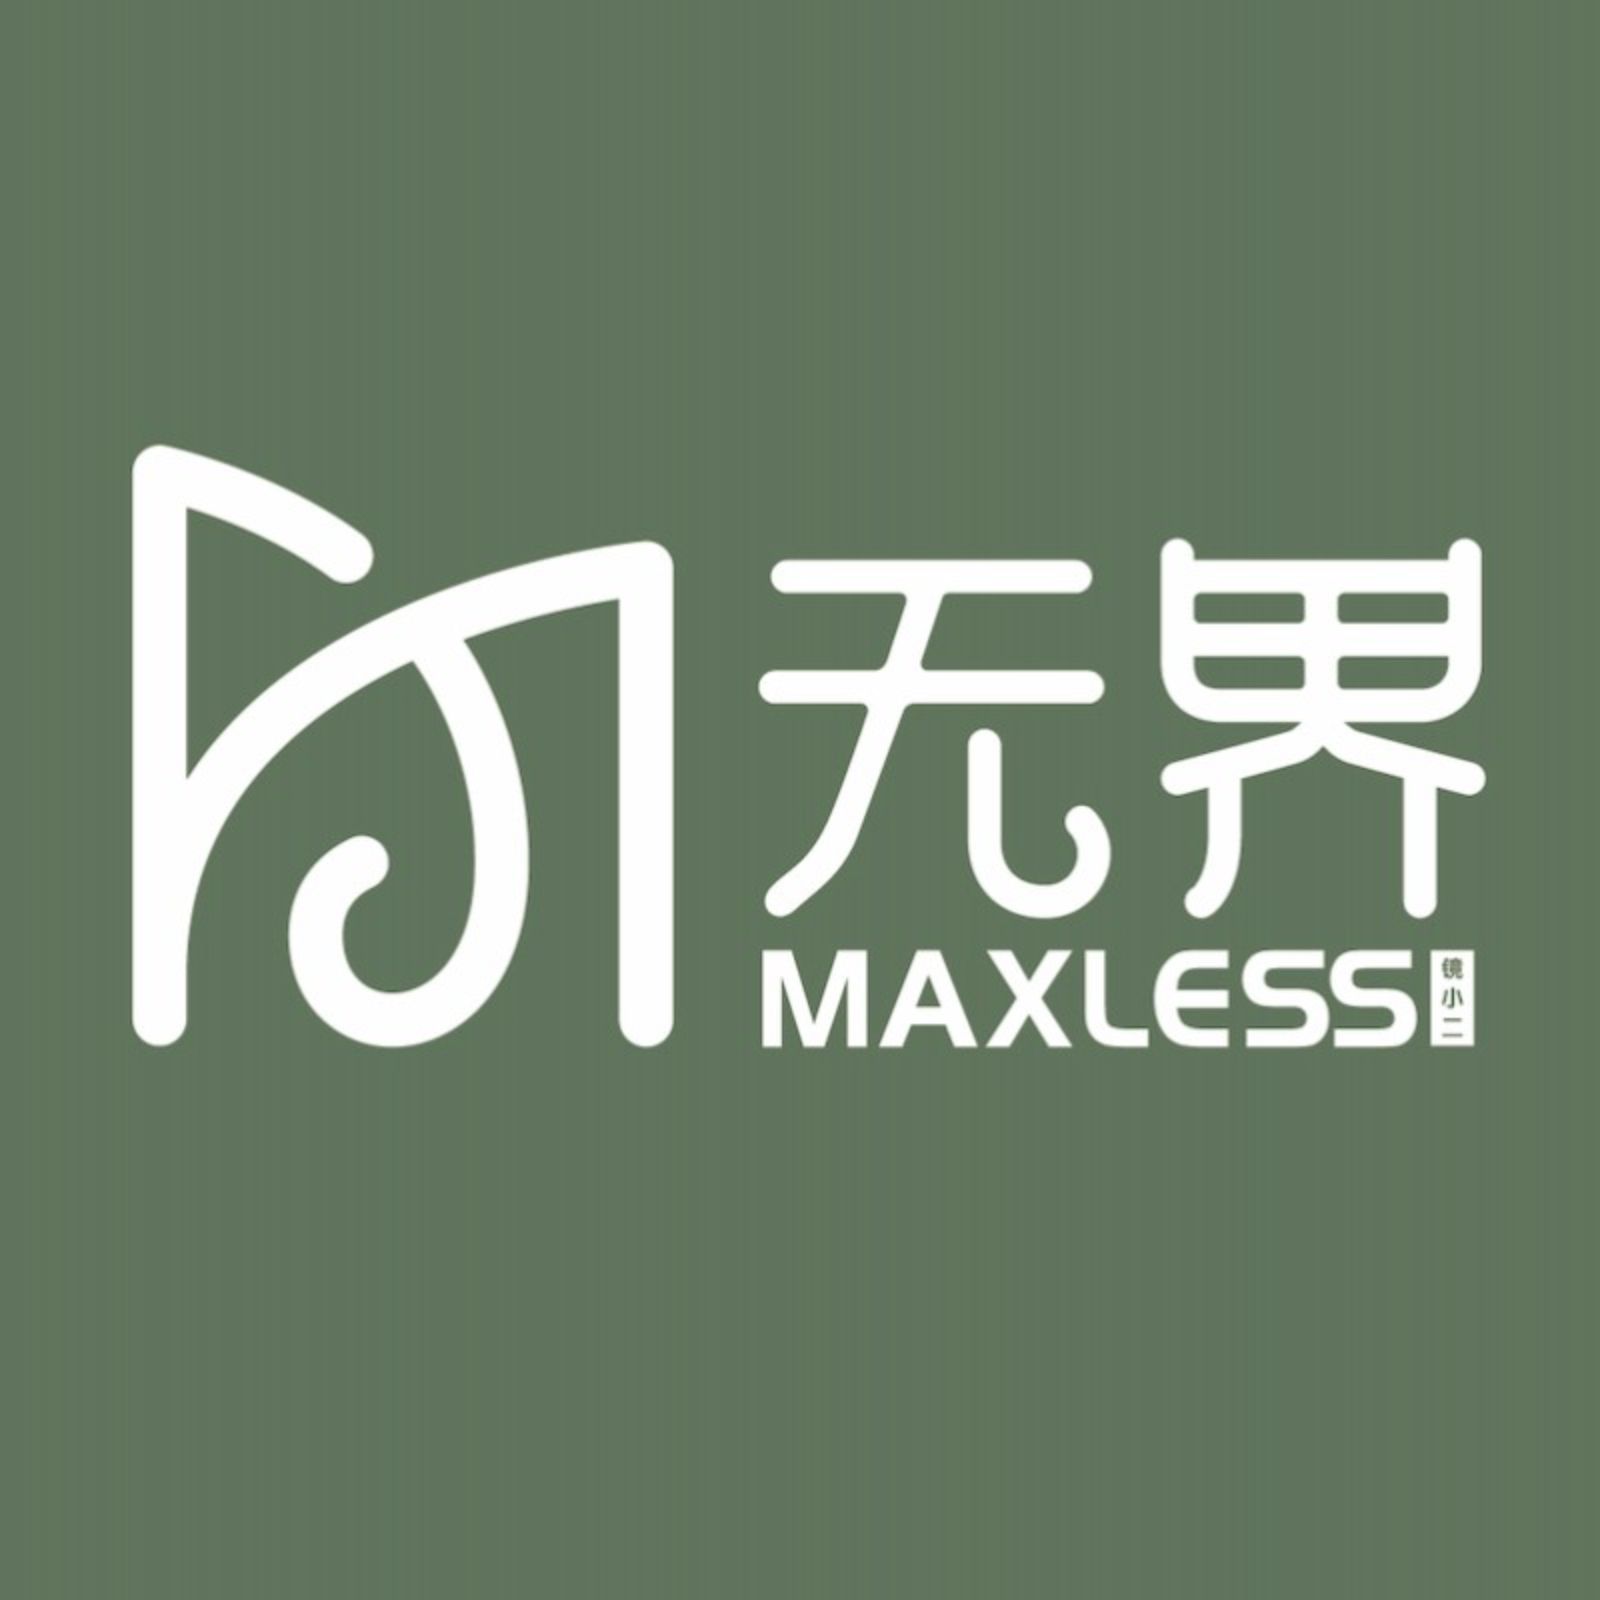 无界眼镜MaxLess